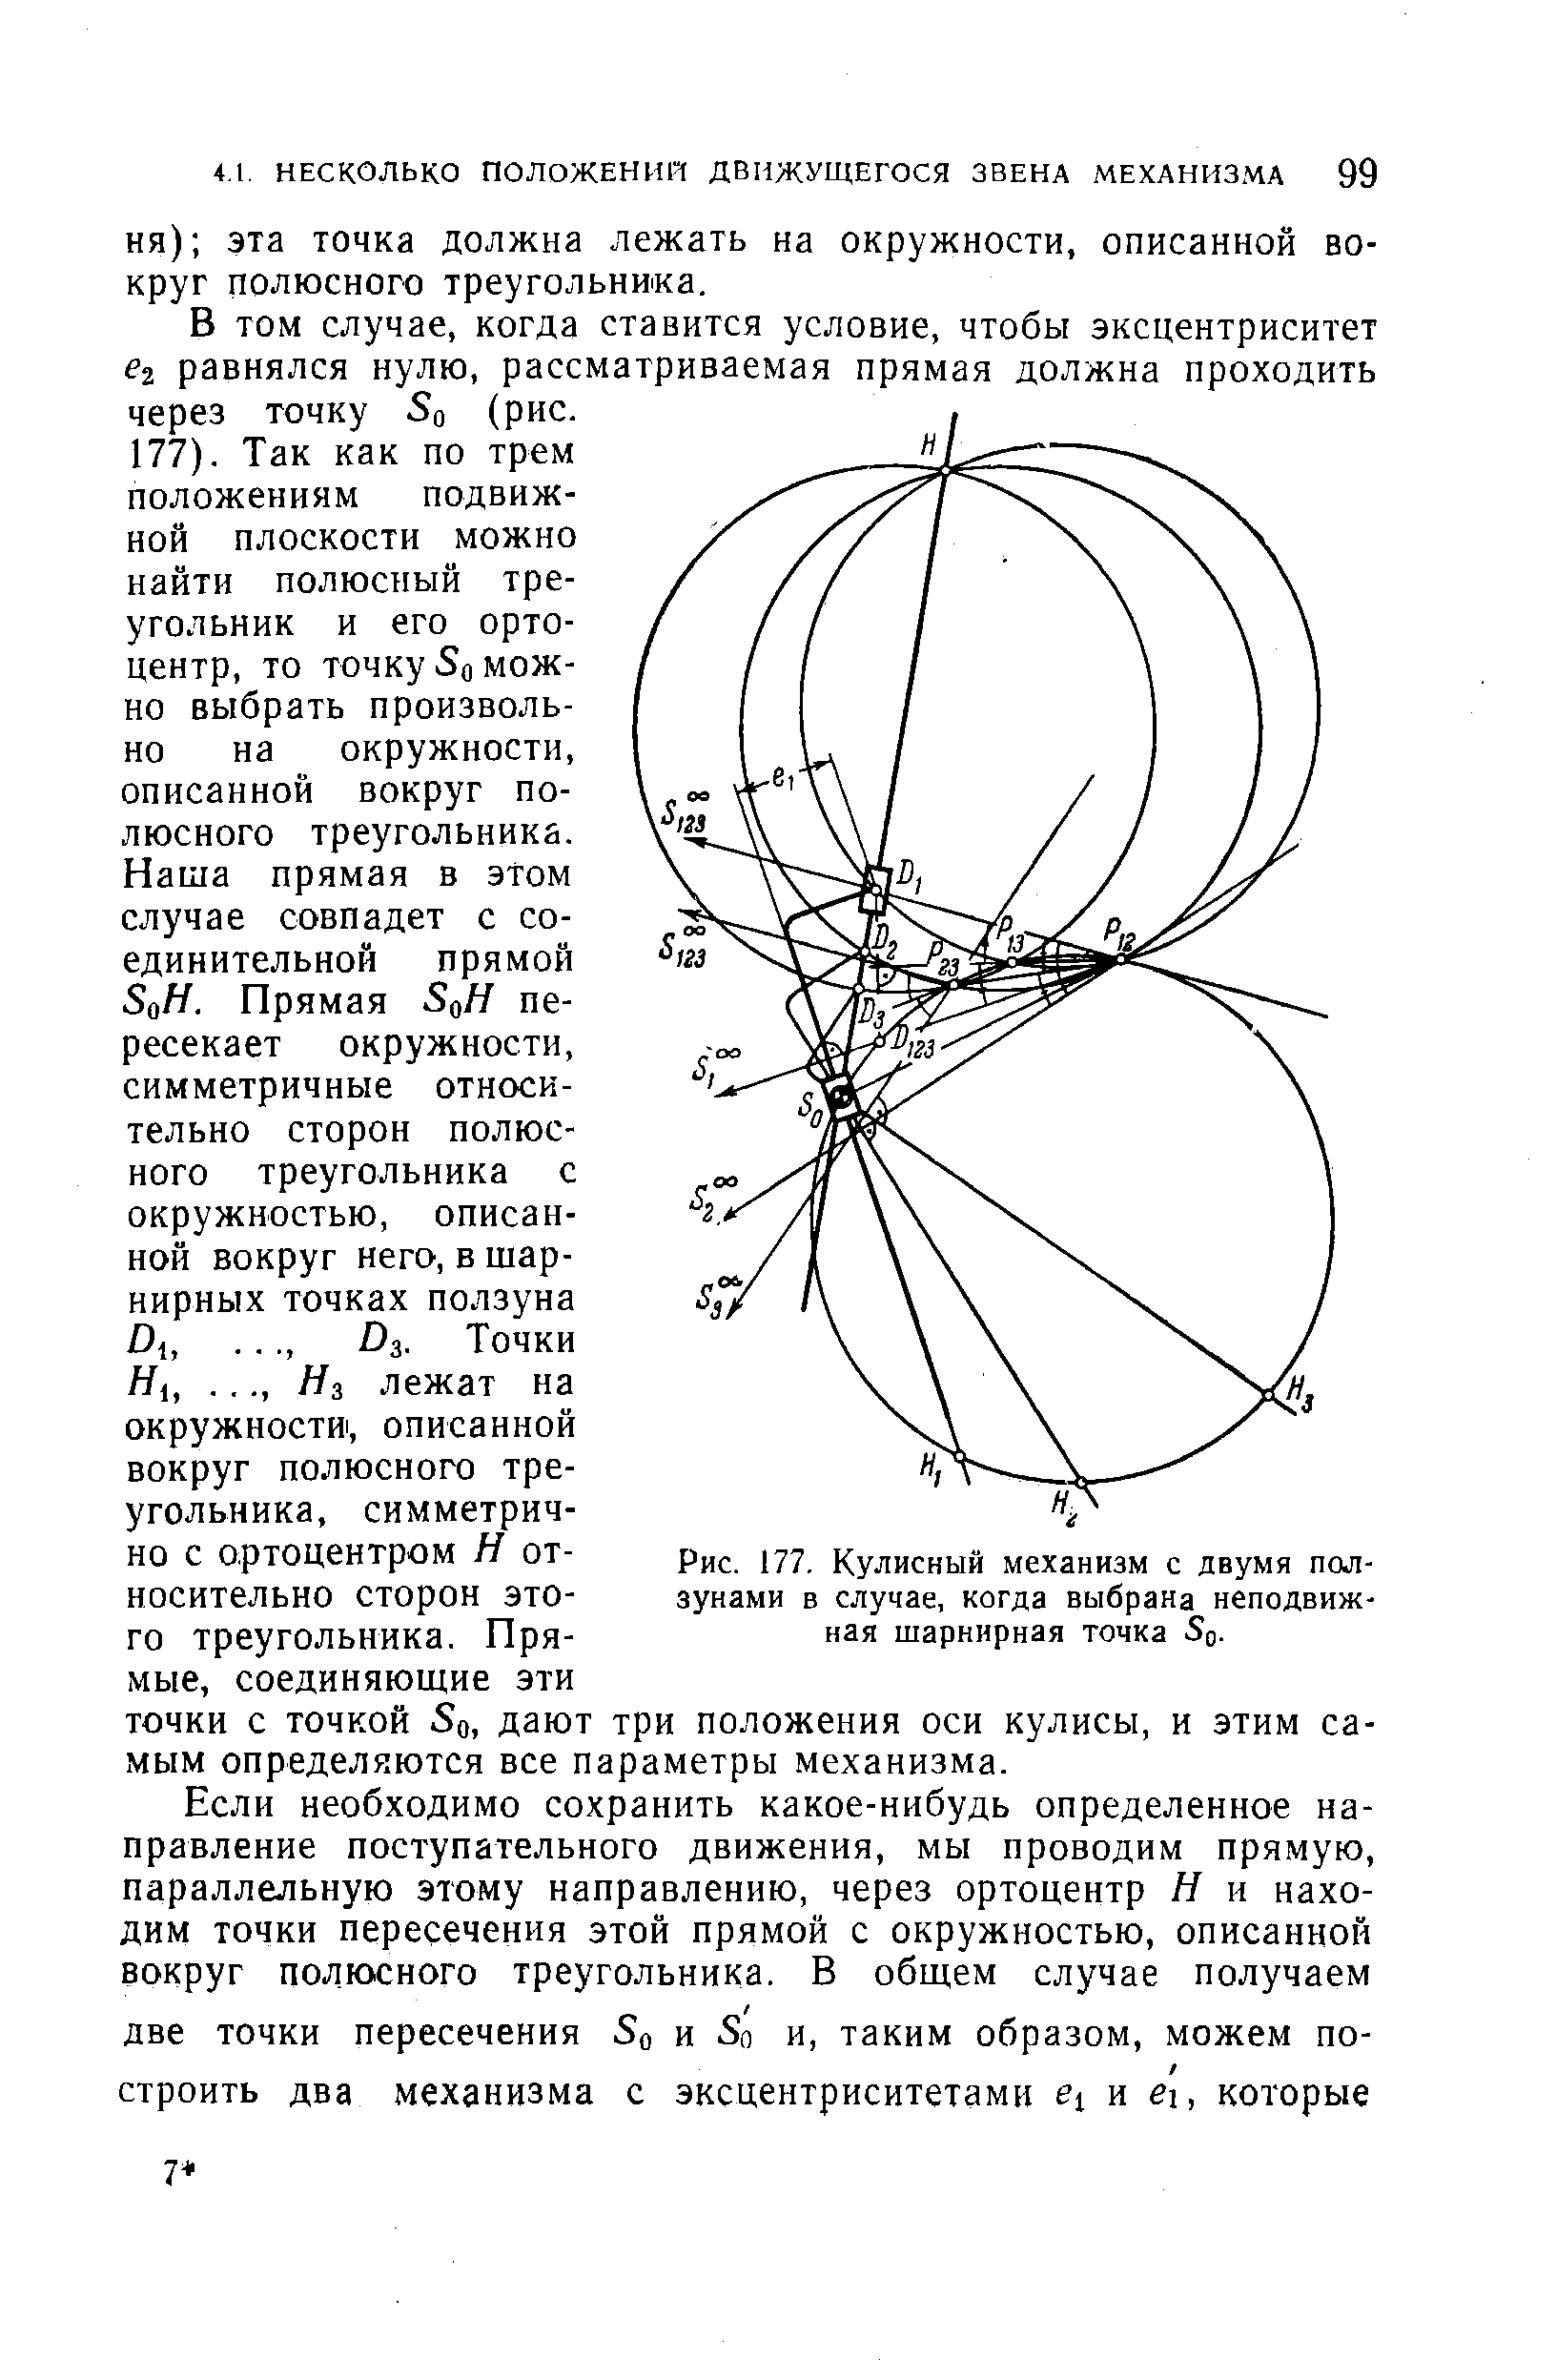 Рис. 177. Кулисный механизм с двумя ползунами в случае, когда выбрана неподвижная шарнирная точка Sq.
